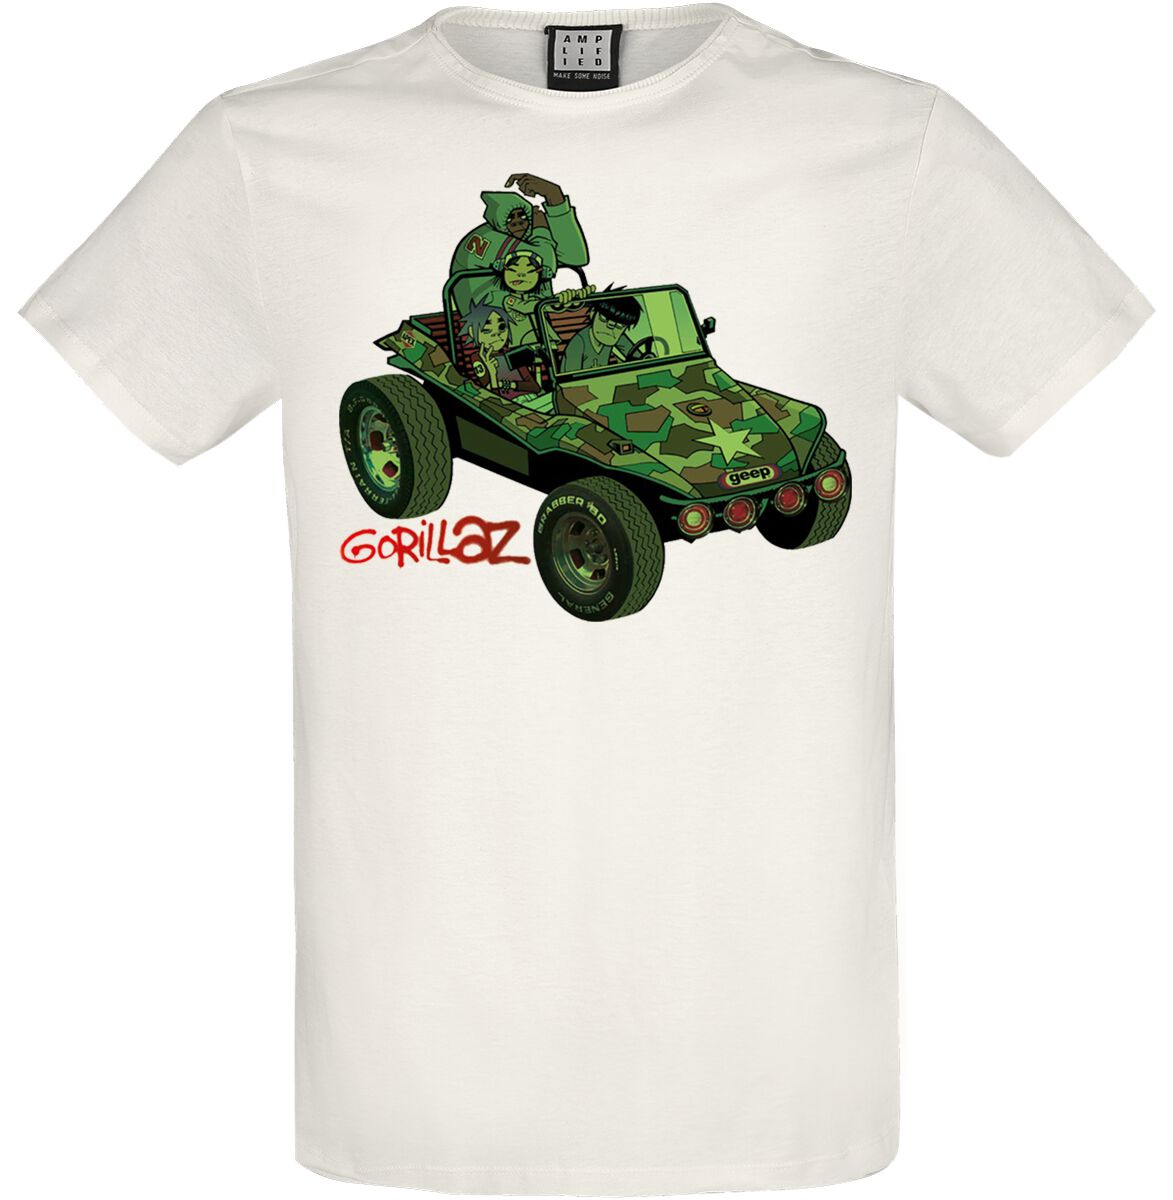 Gorillaz T-Shirt - Amplified Collection - Geep - L bis XXL - für Männer - Größe XXL - altweiß  - Lizenziertes Merchandise!